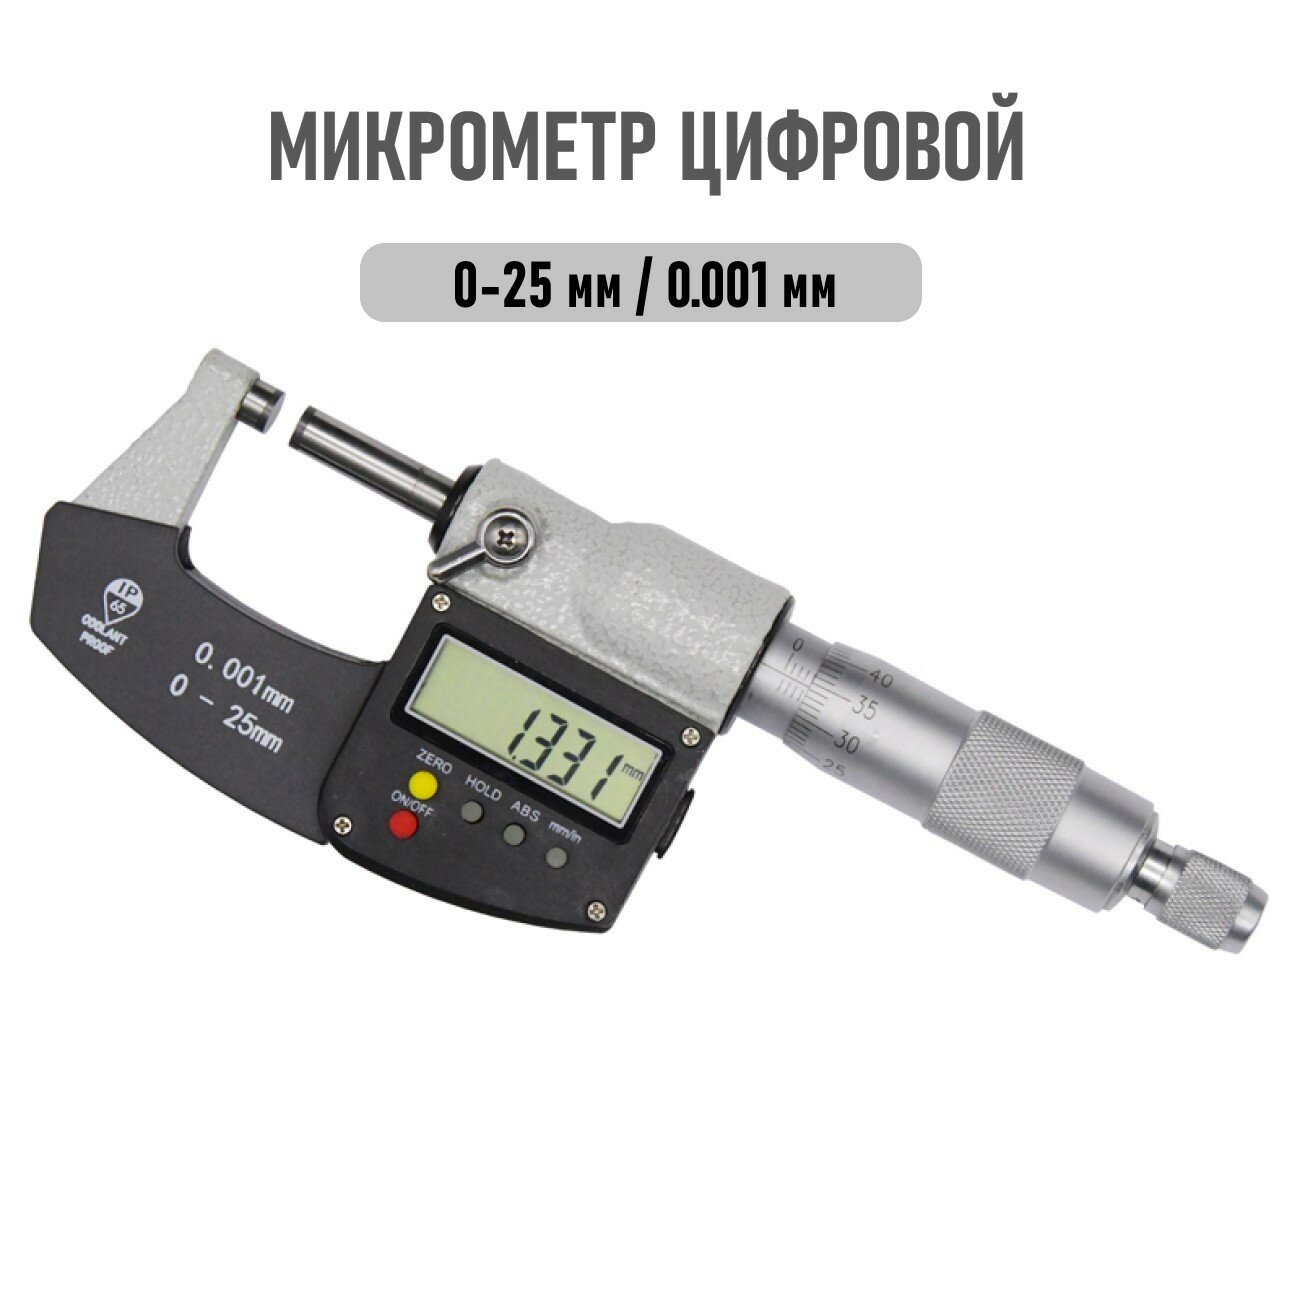 Микрометр цифровой 0-25мм, точность 0,001мм IP65